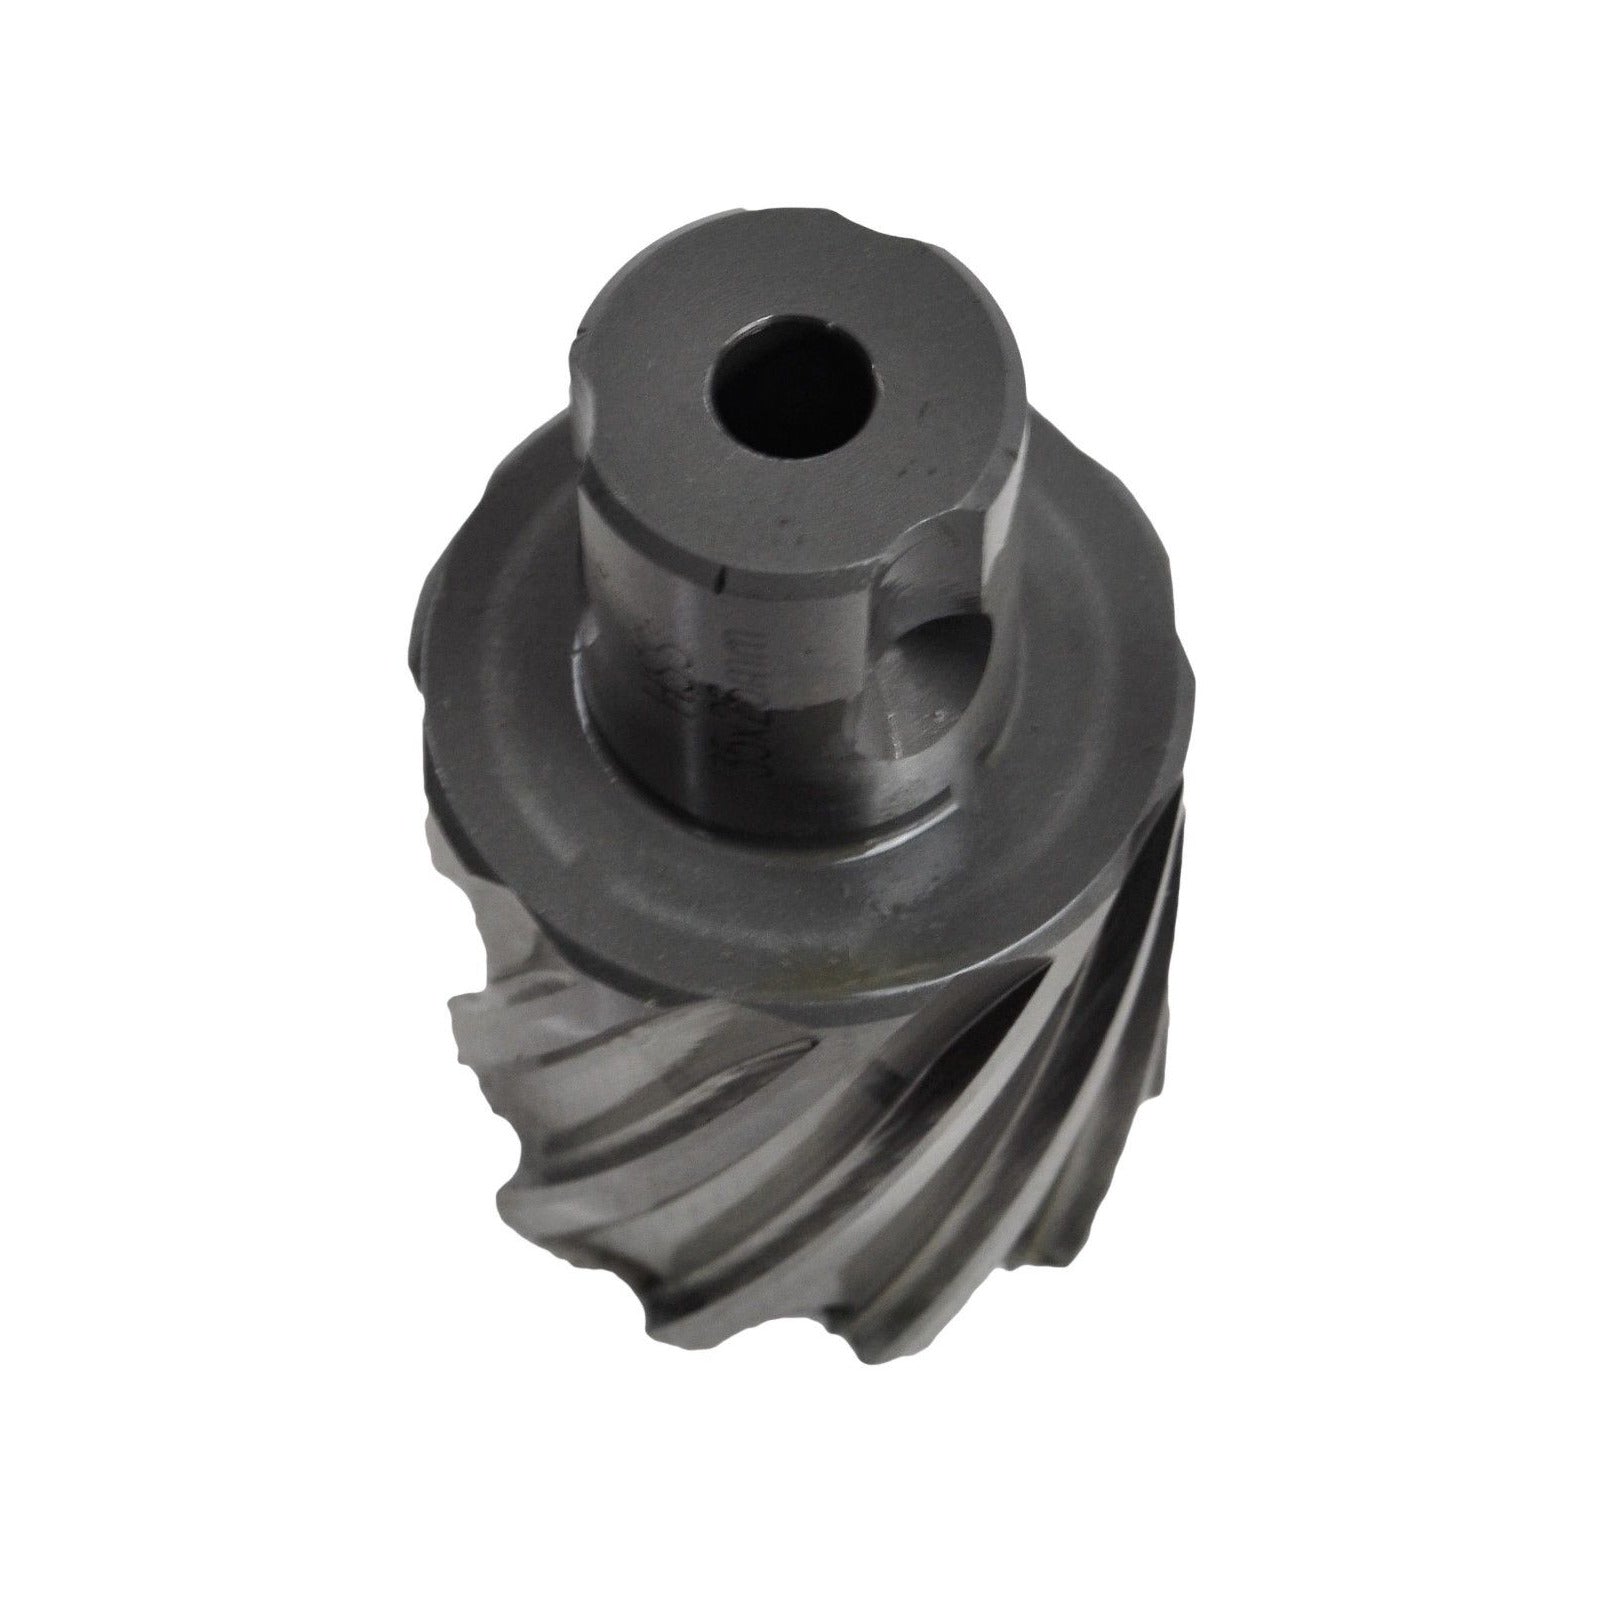 35x25 mm HSS Annular Broach Cutter ; Magnetic Drill. ; Rotabroach ; Universal Shank